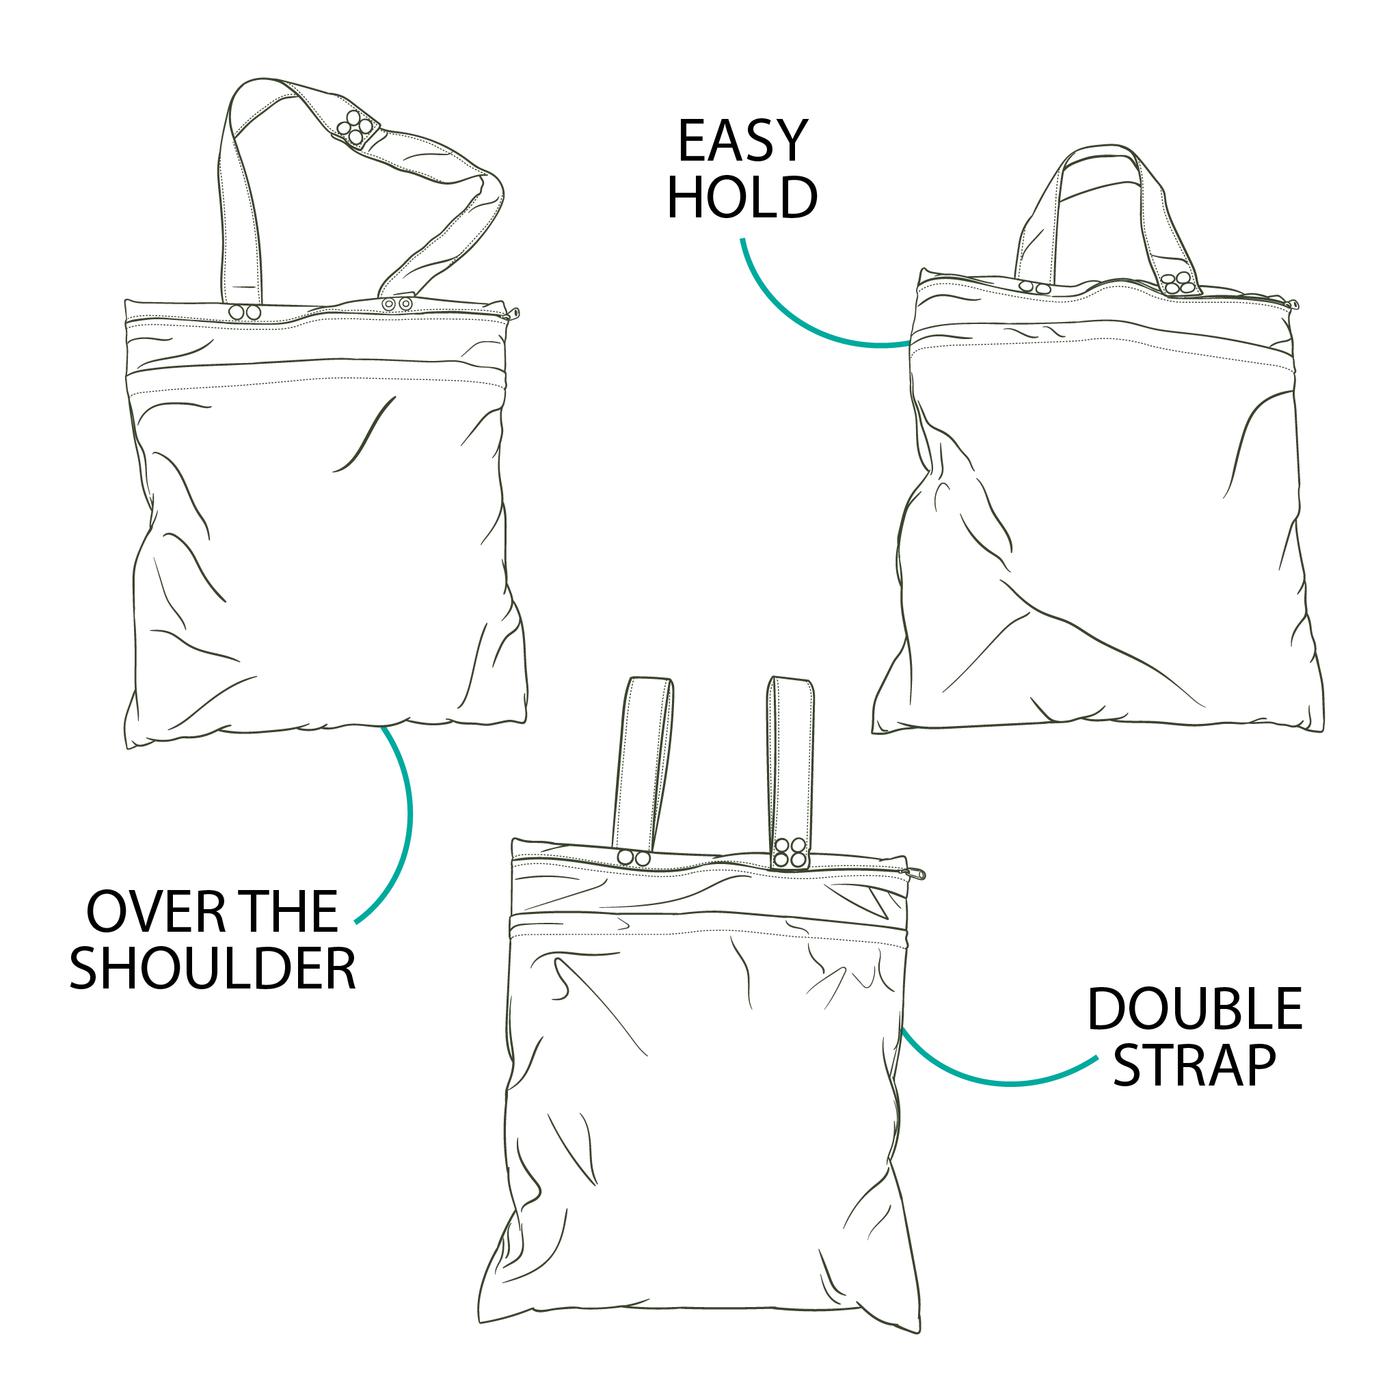 Earthside Eco Bums Premium Double Zip Wet Bag Ningaloo Dreaming-Wet Bag-Earthside Eco Bums-The Nappy Market